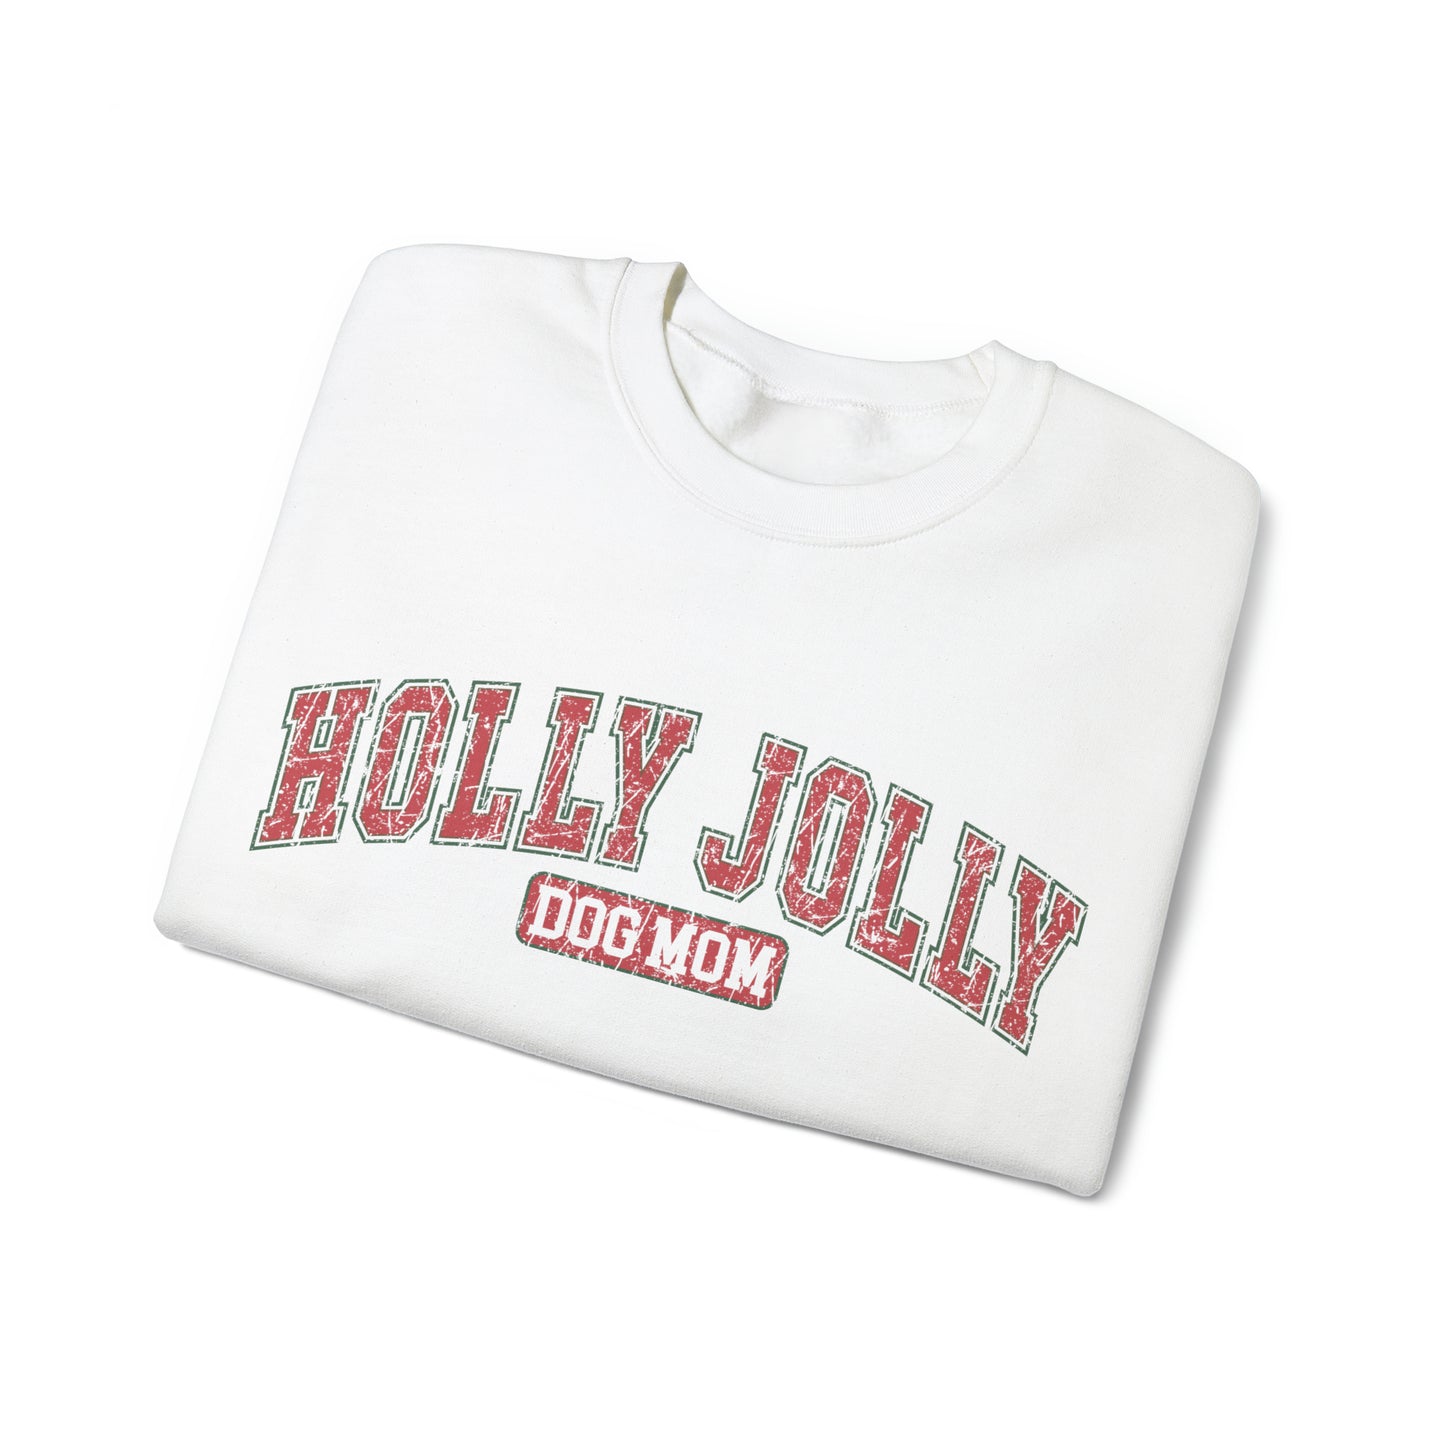 Holly Jolly Dog Mom Crewneck Sweatshirt